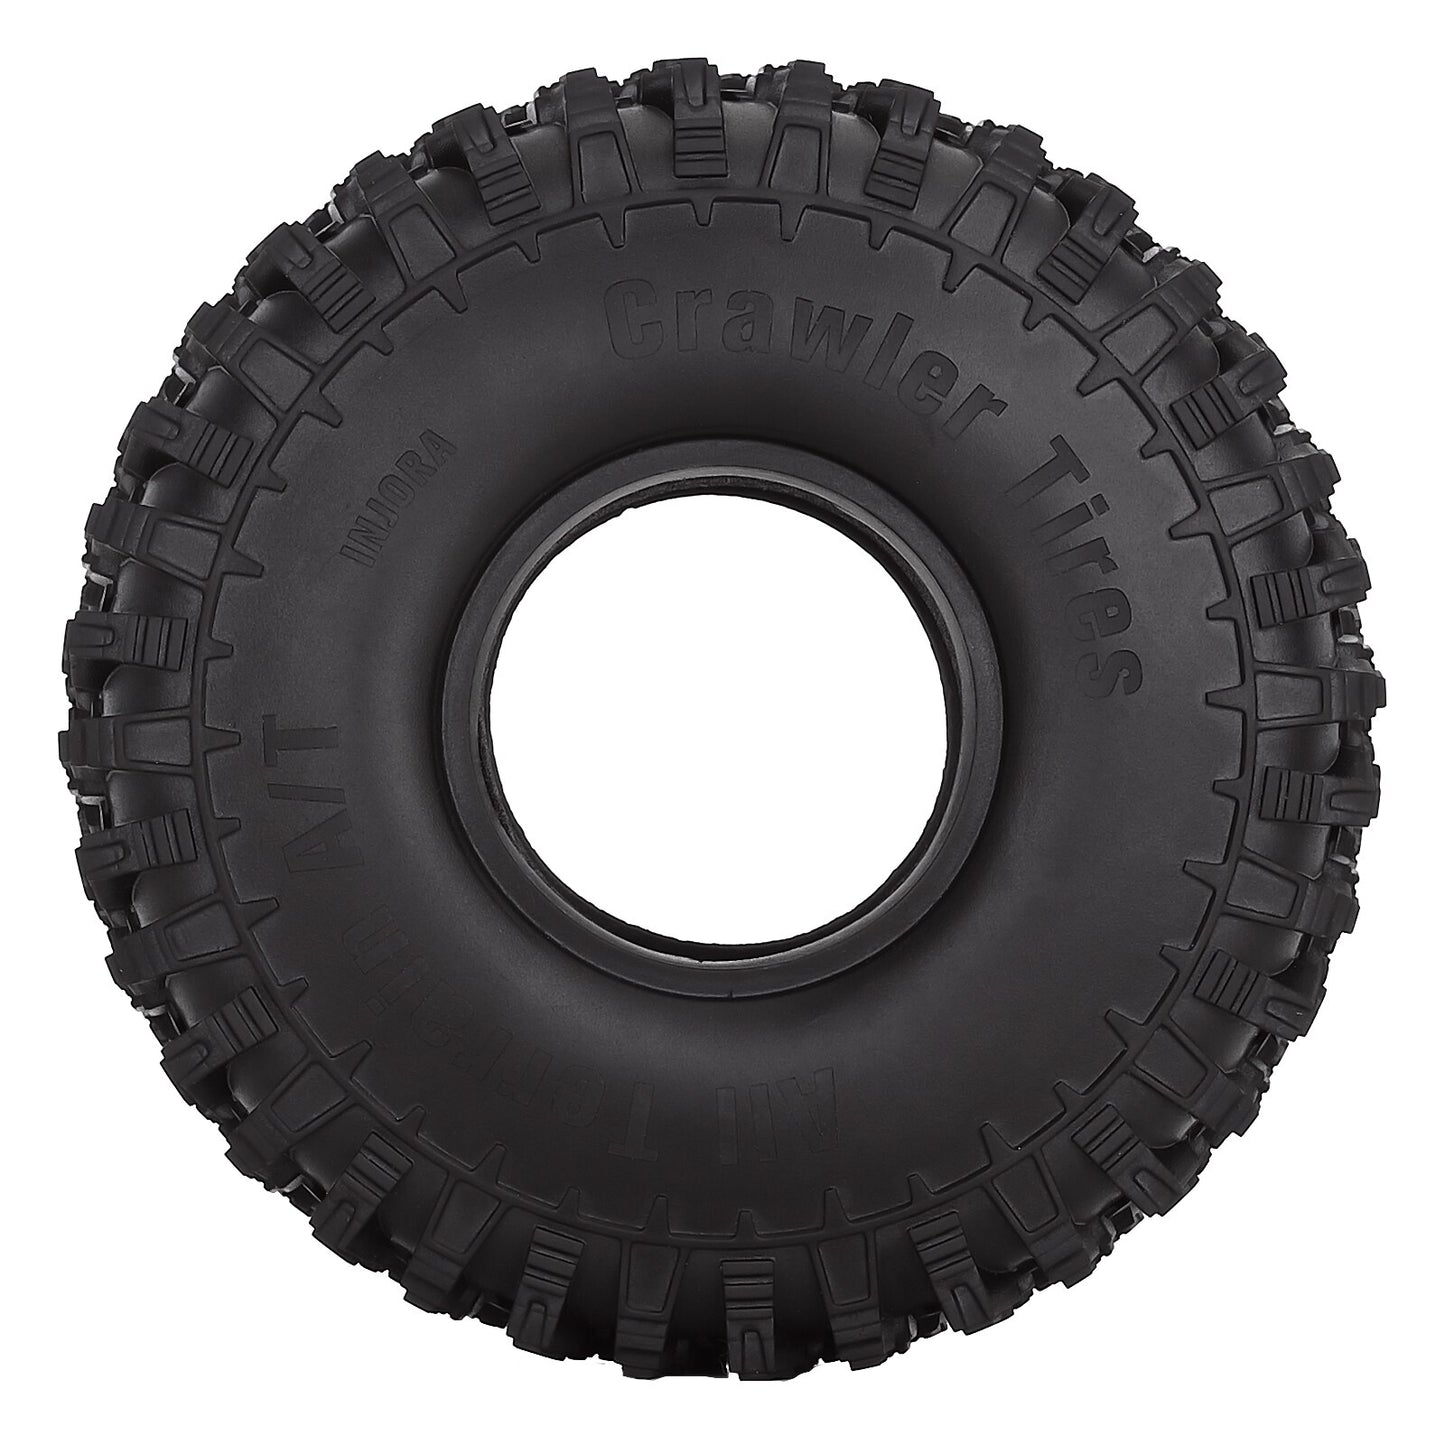 INJORA 4PCS 120*42mm 1.9" Rubber All Terrain Wheel Tires for 1:10 RC Rock Crawler Car TRX4 Axial SCX10 Redcat Gen8